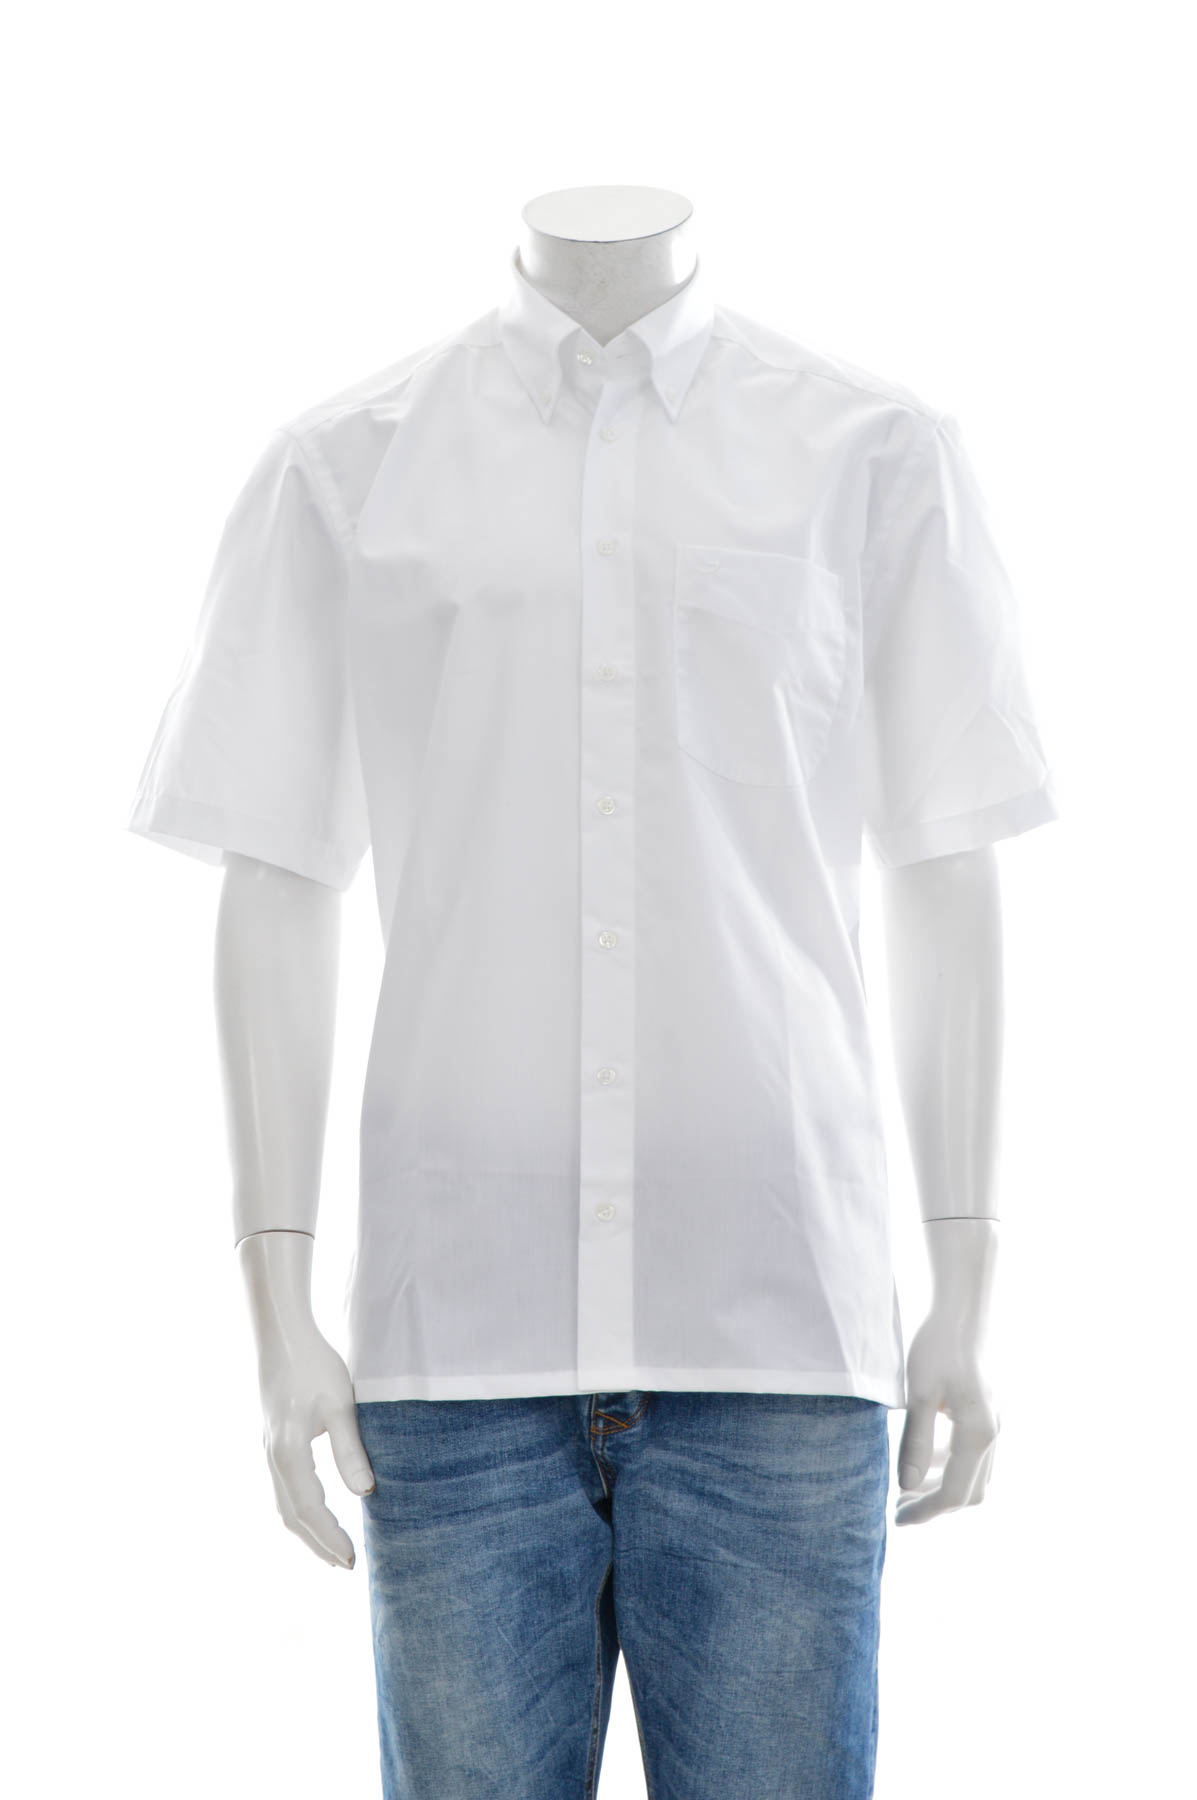 Men's shirt - GOTTFRIED SCHMIDT - 0